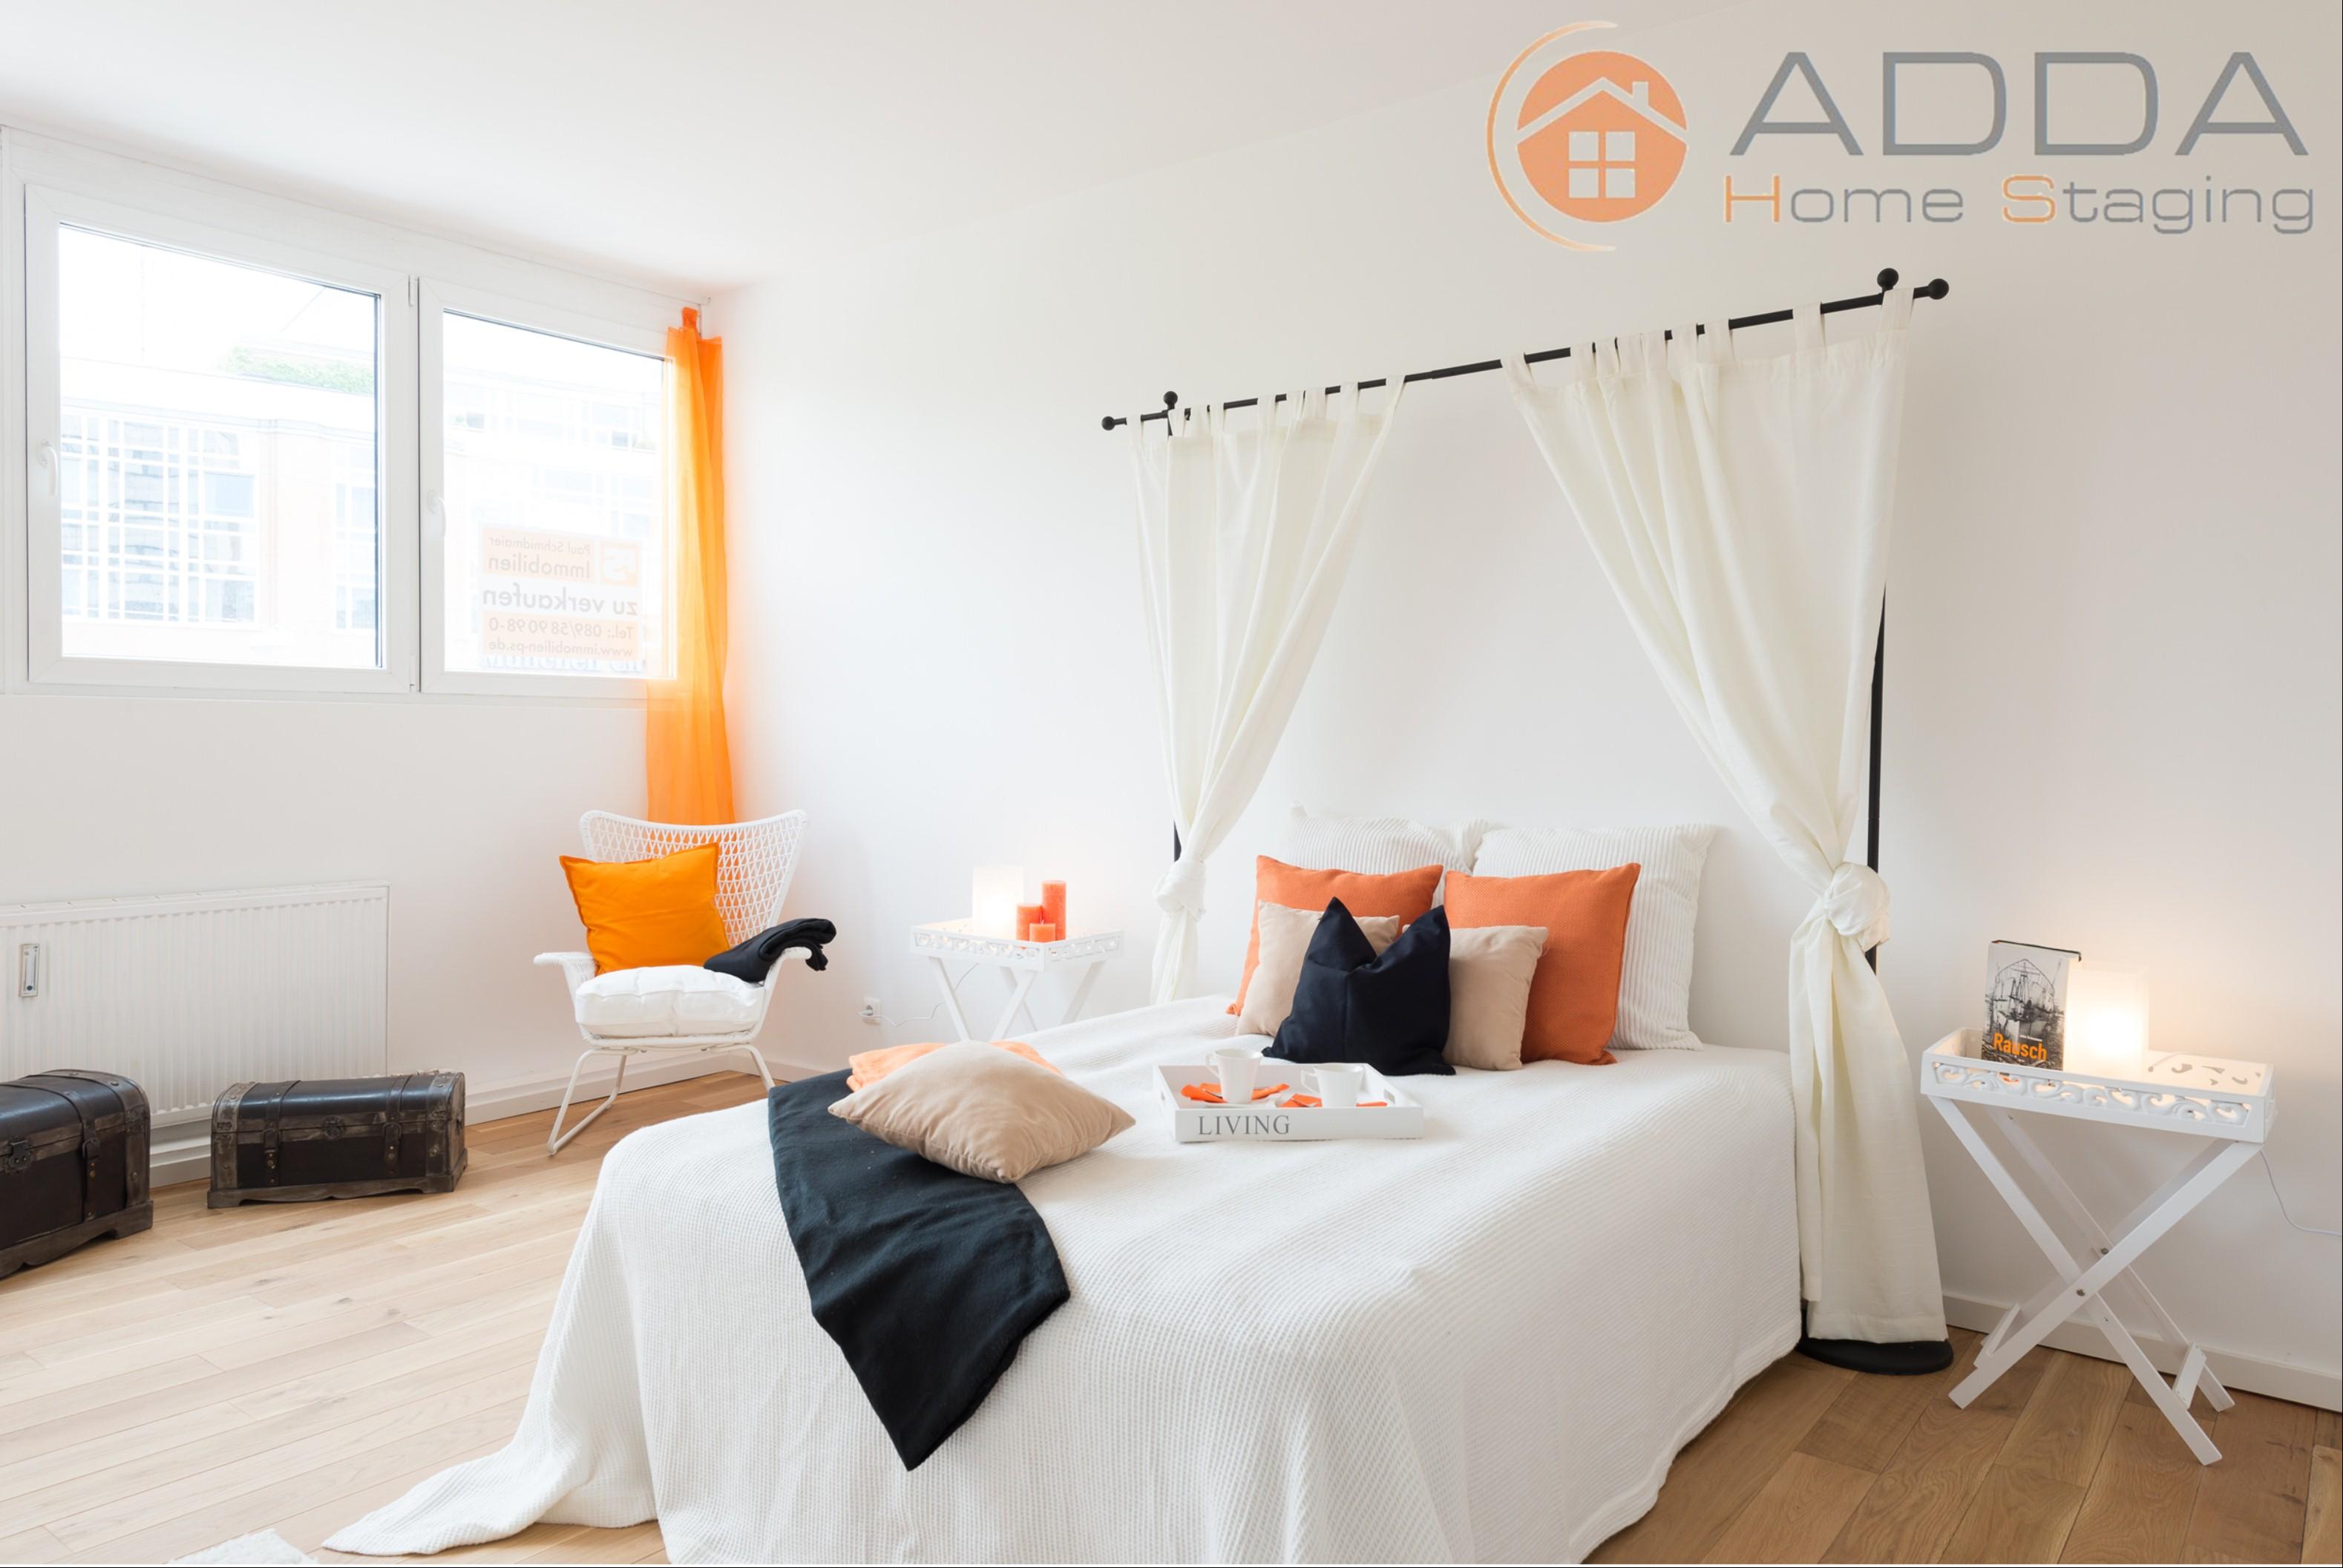 Schlafzimmer nach dem Home Staging #baldachin #tablett ©ADDA Home Staging